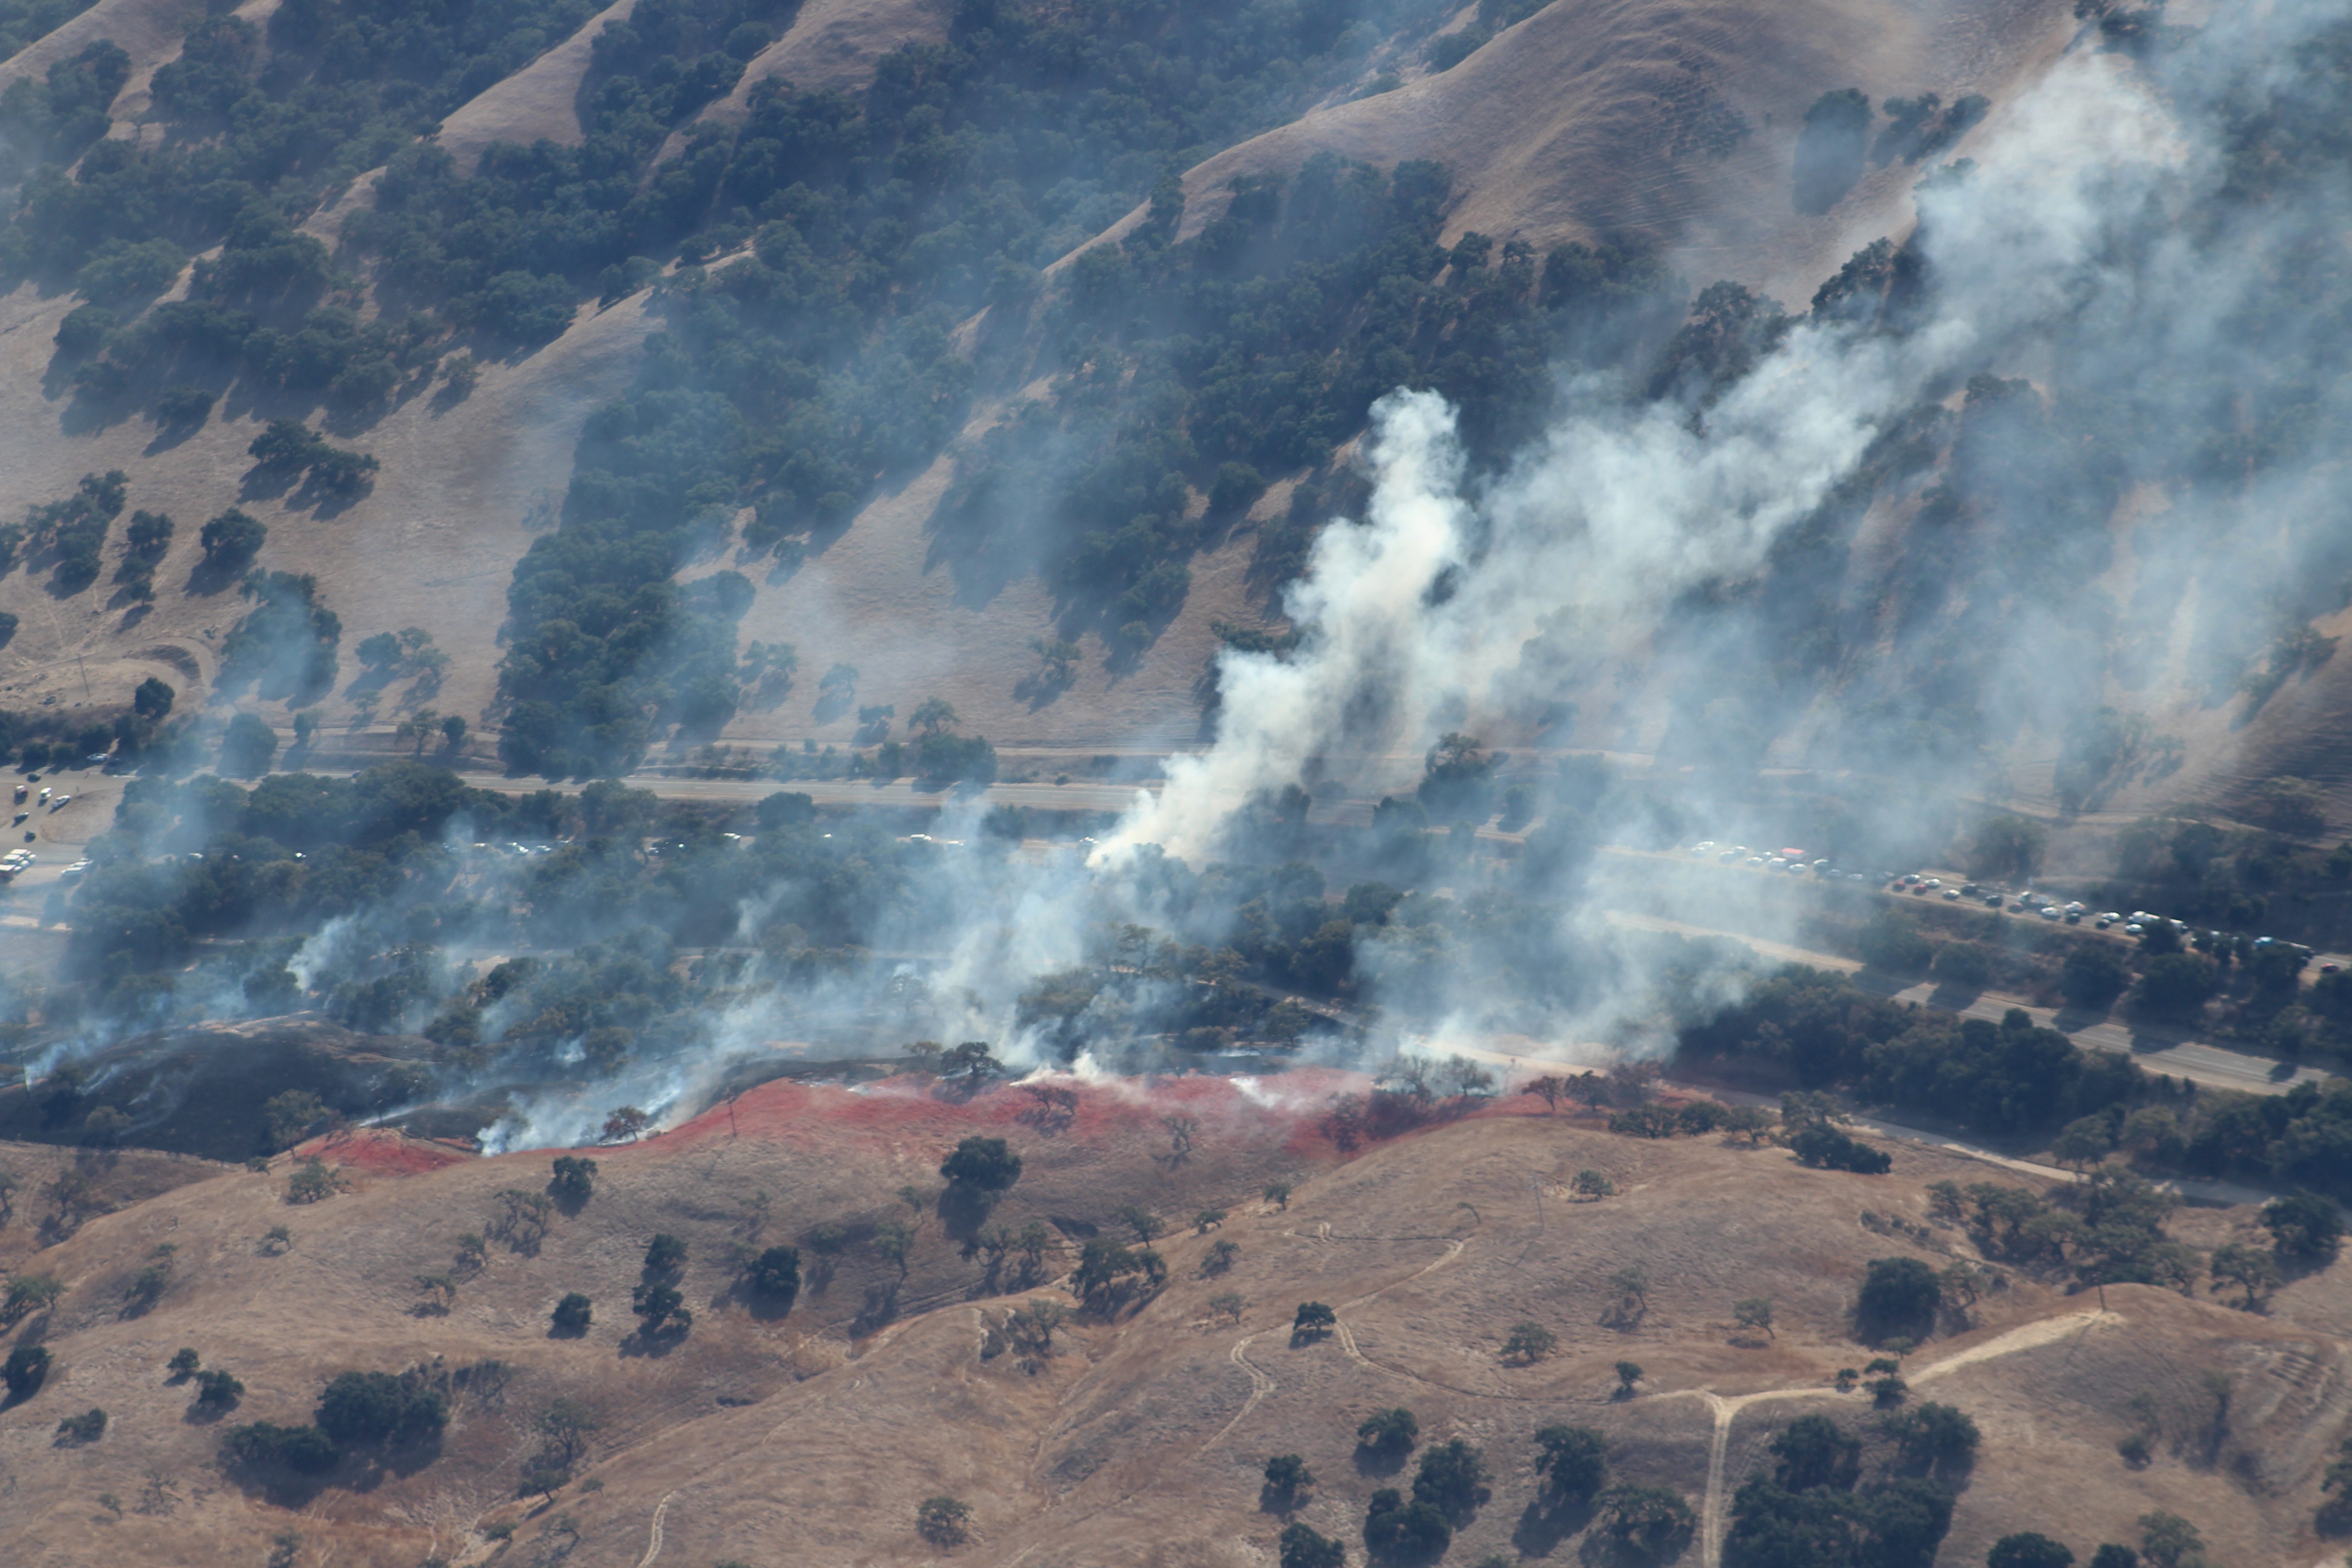 Woodchopper fires burning near Los Alamos